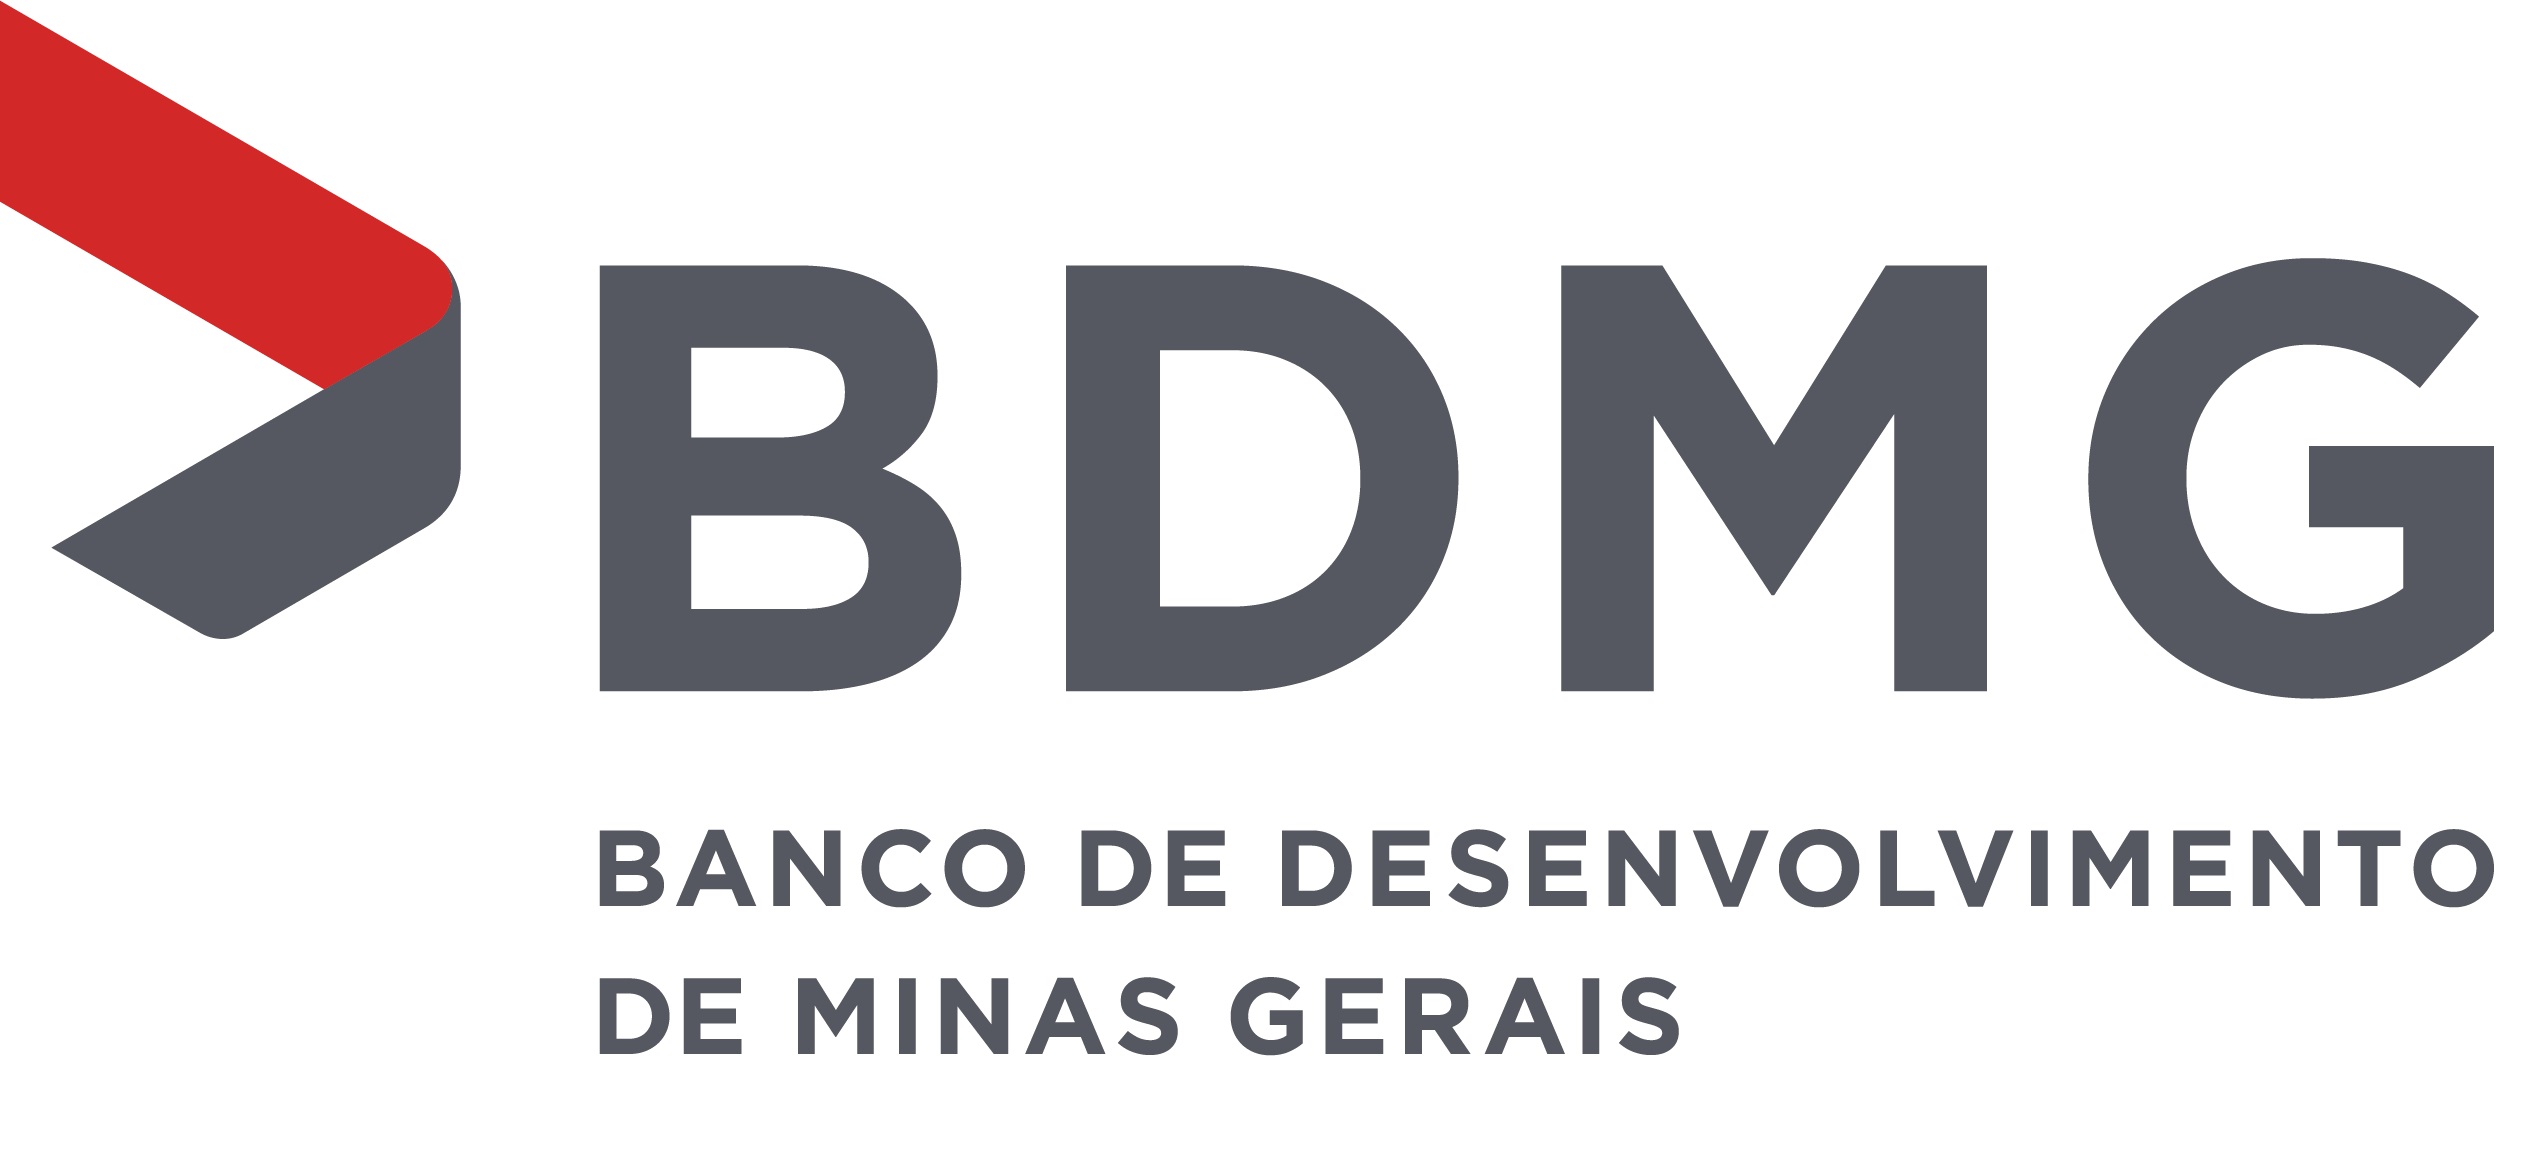 Banco de Desenvolvimento de Minas Gerais